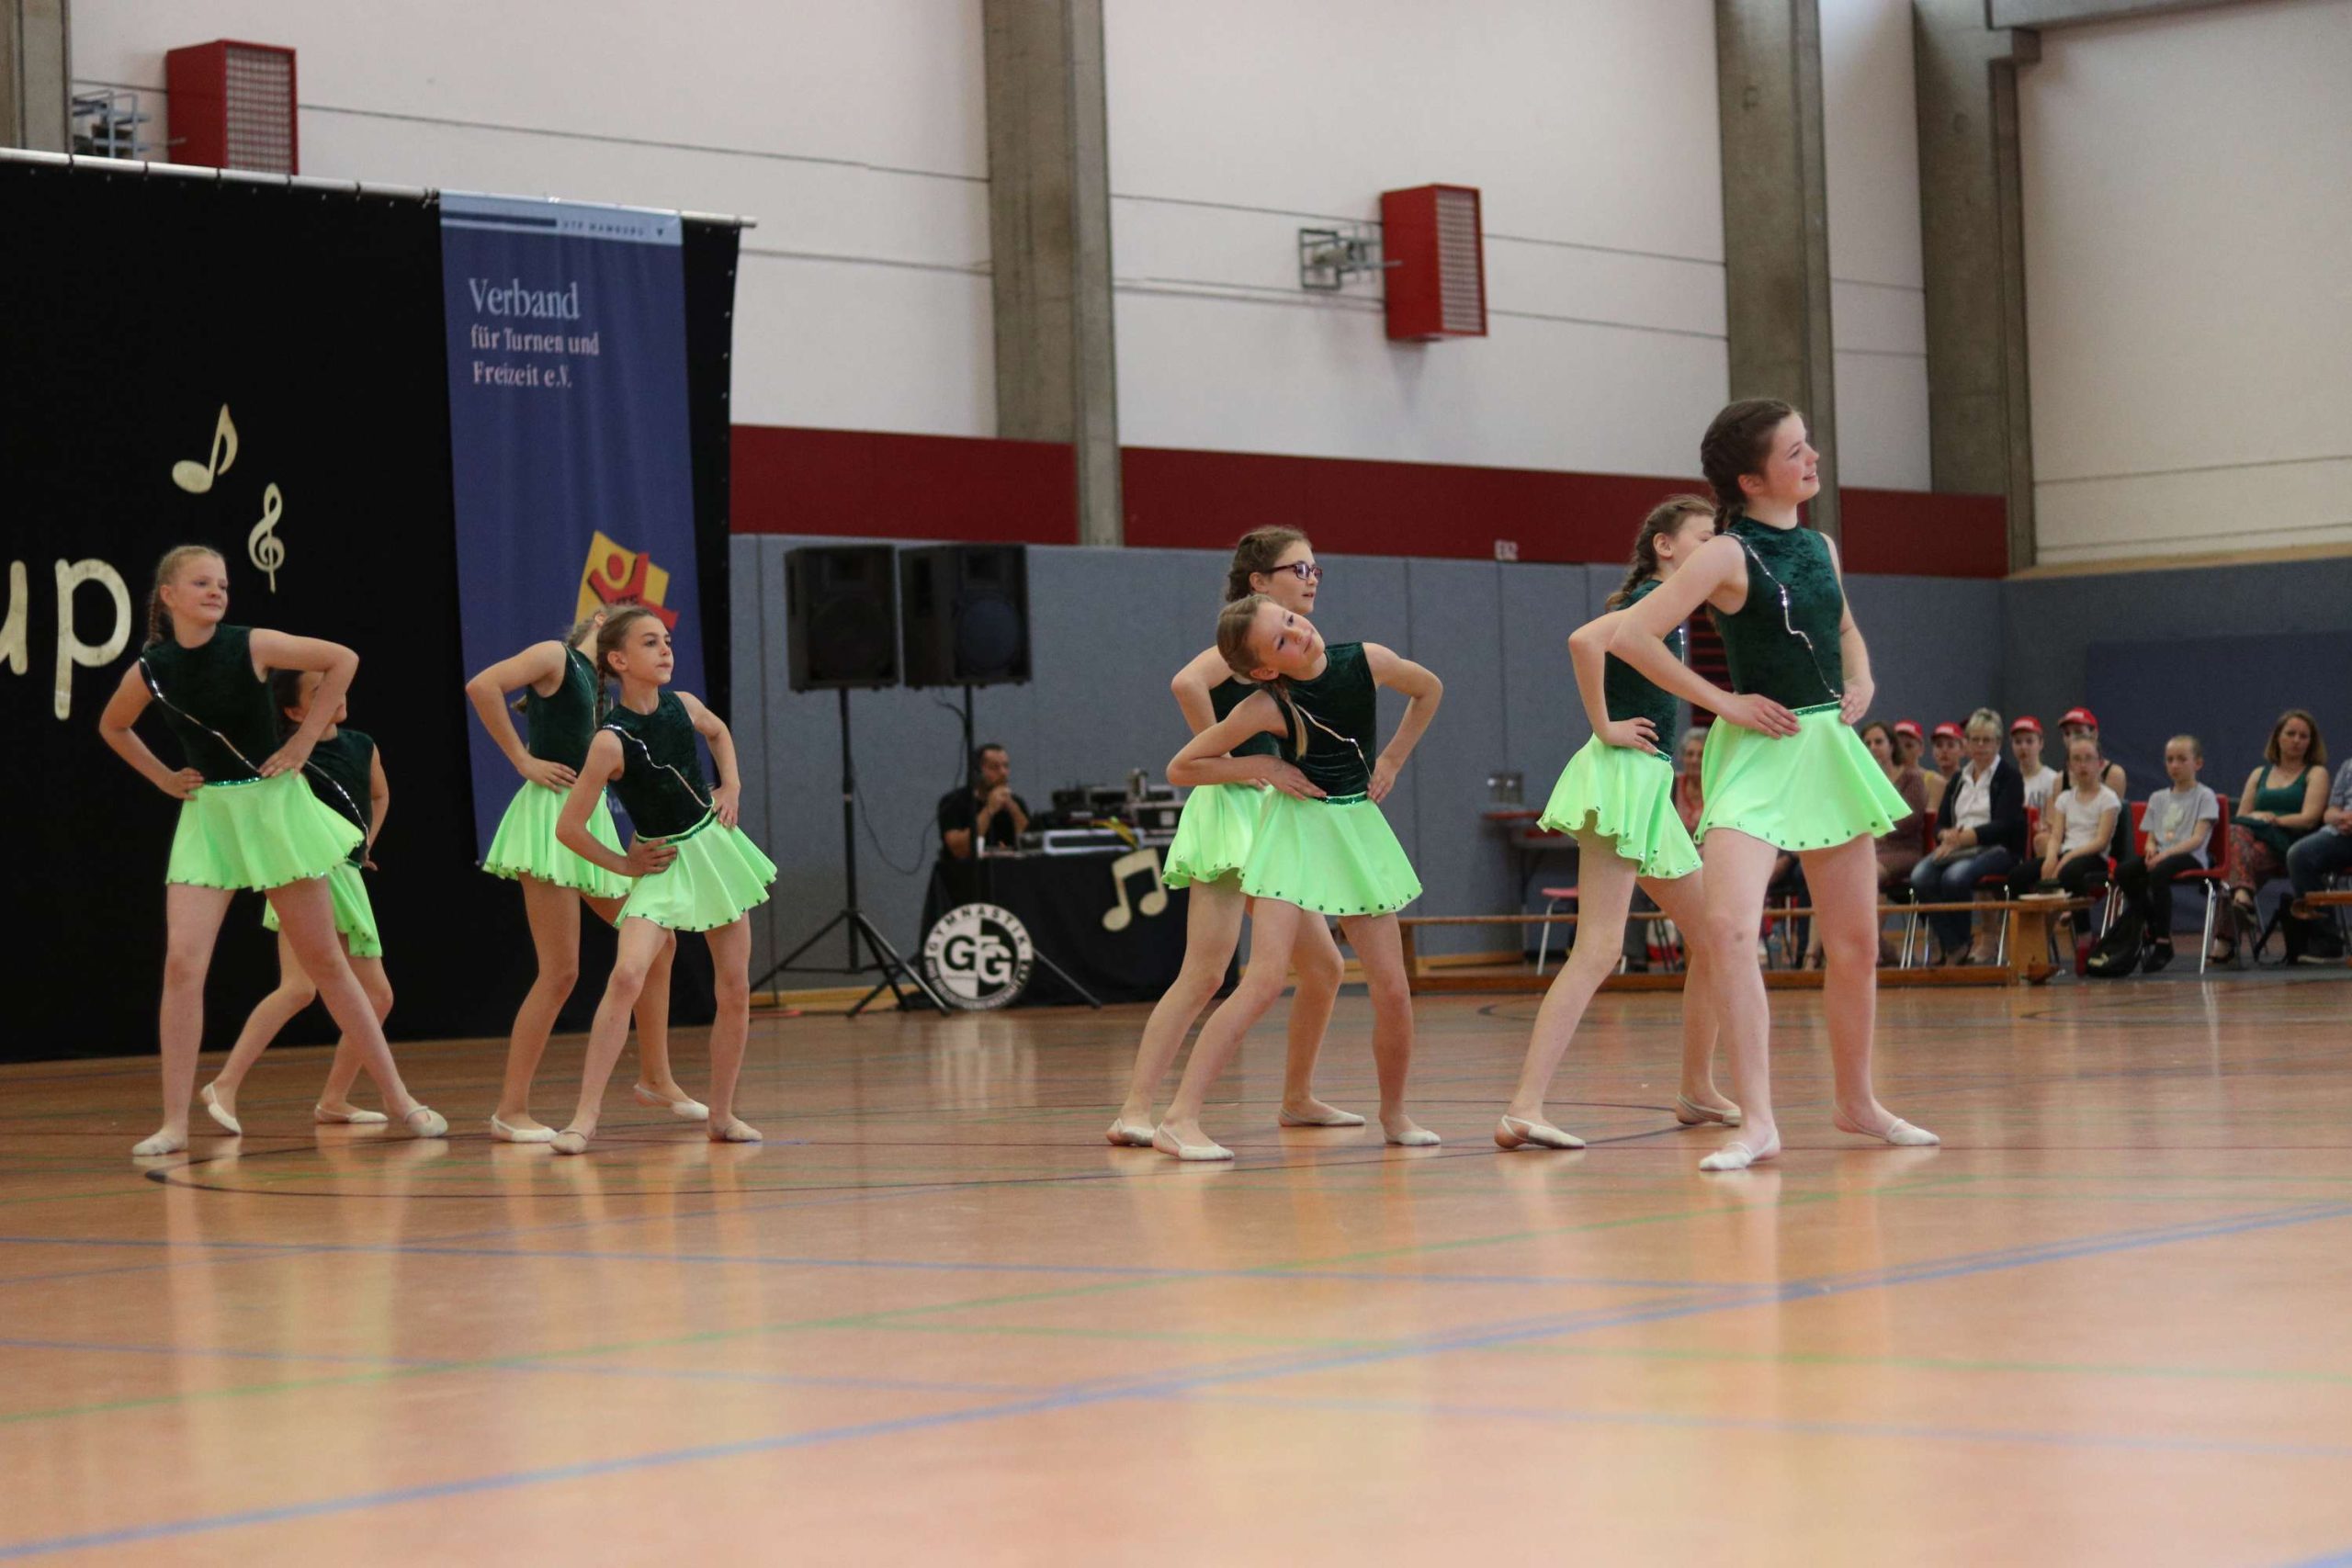 Gruppe aus Tänzerinnen mit einem dunkelgrünen Oberteil und einem leuchtenden hellgrünen Rock bei ihrer Performance